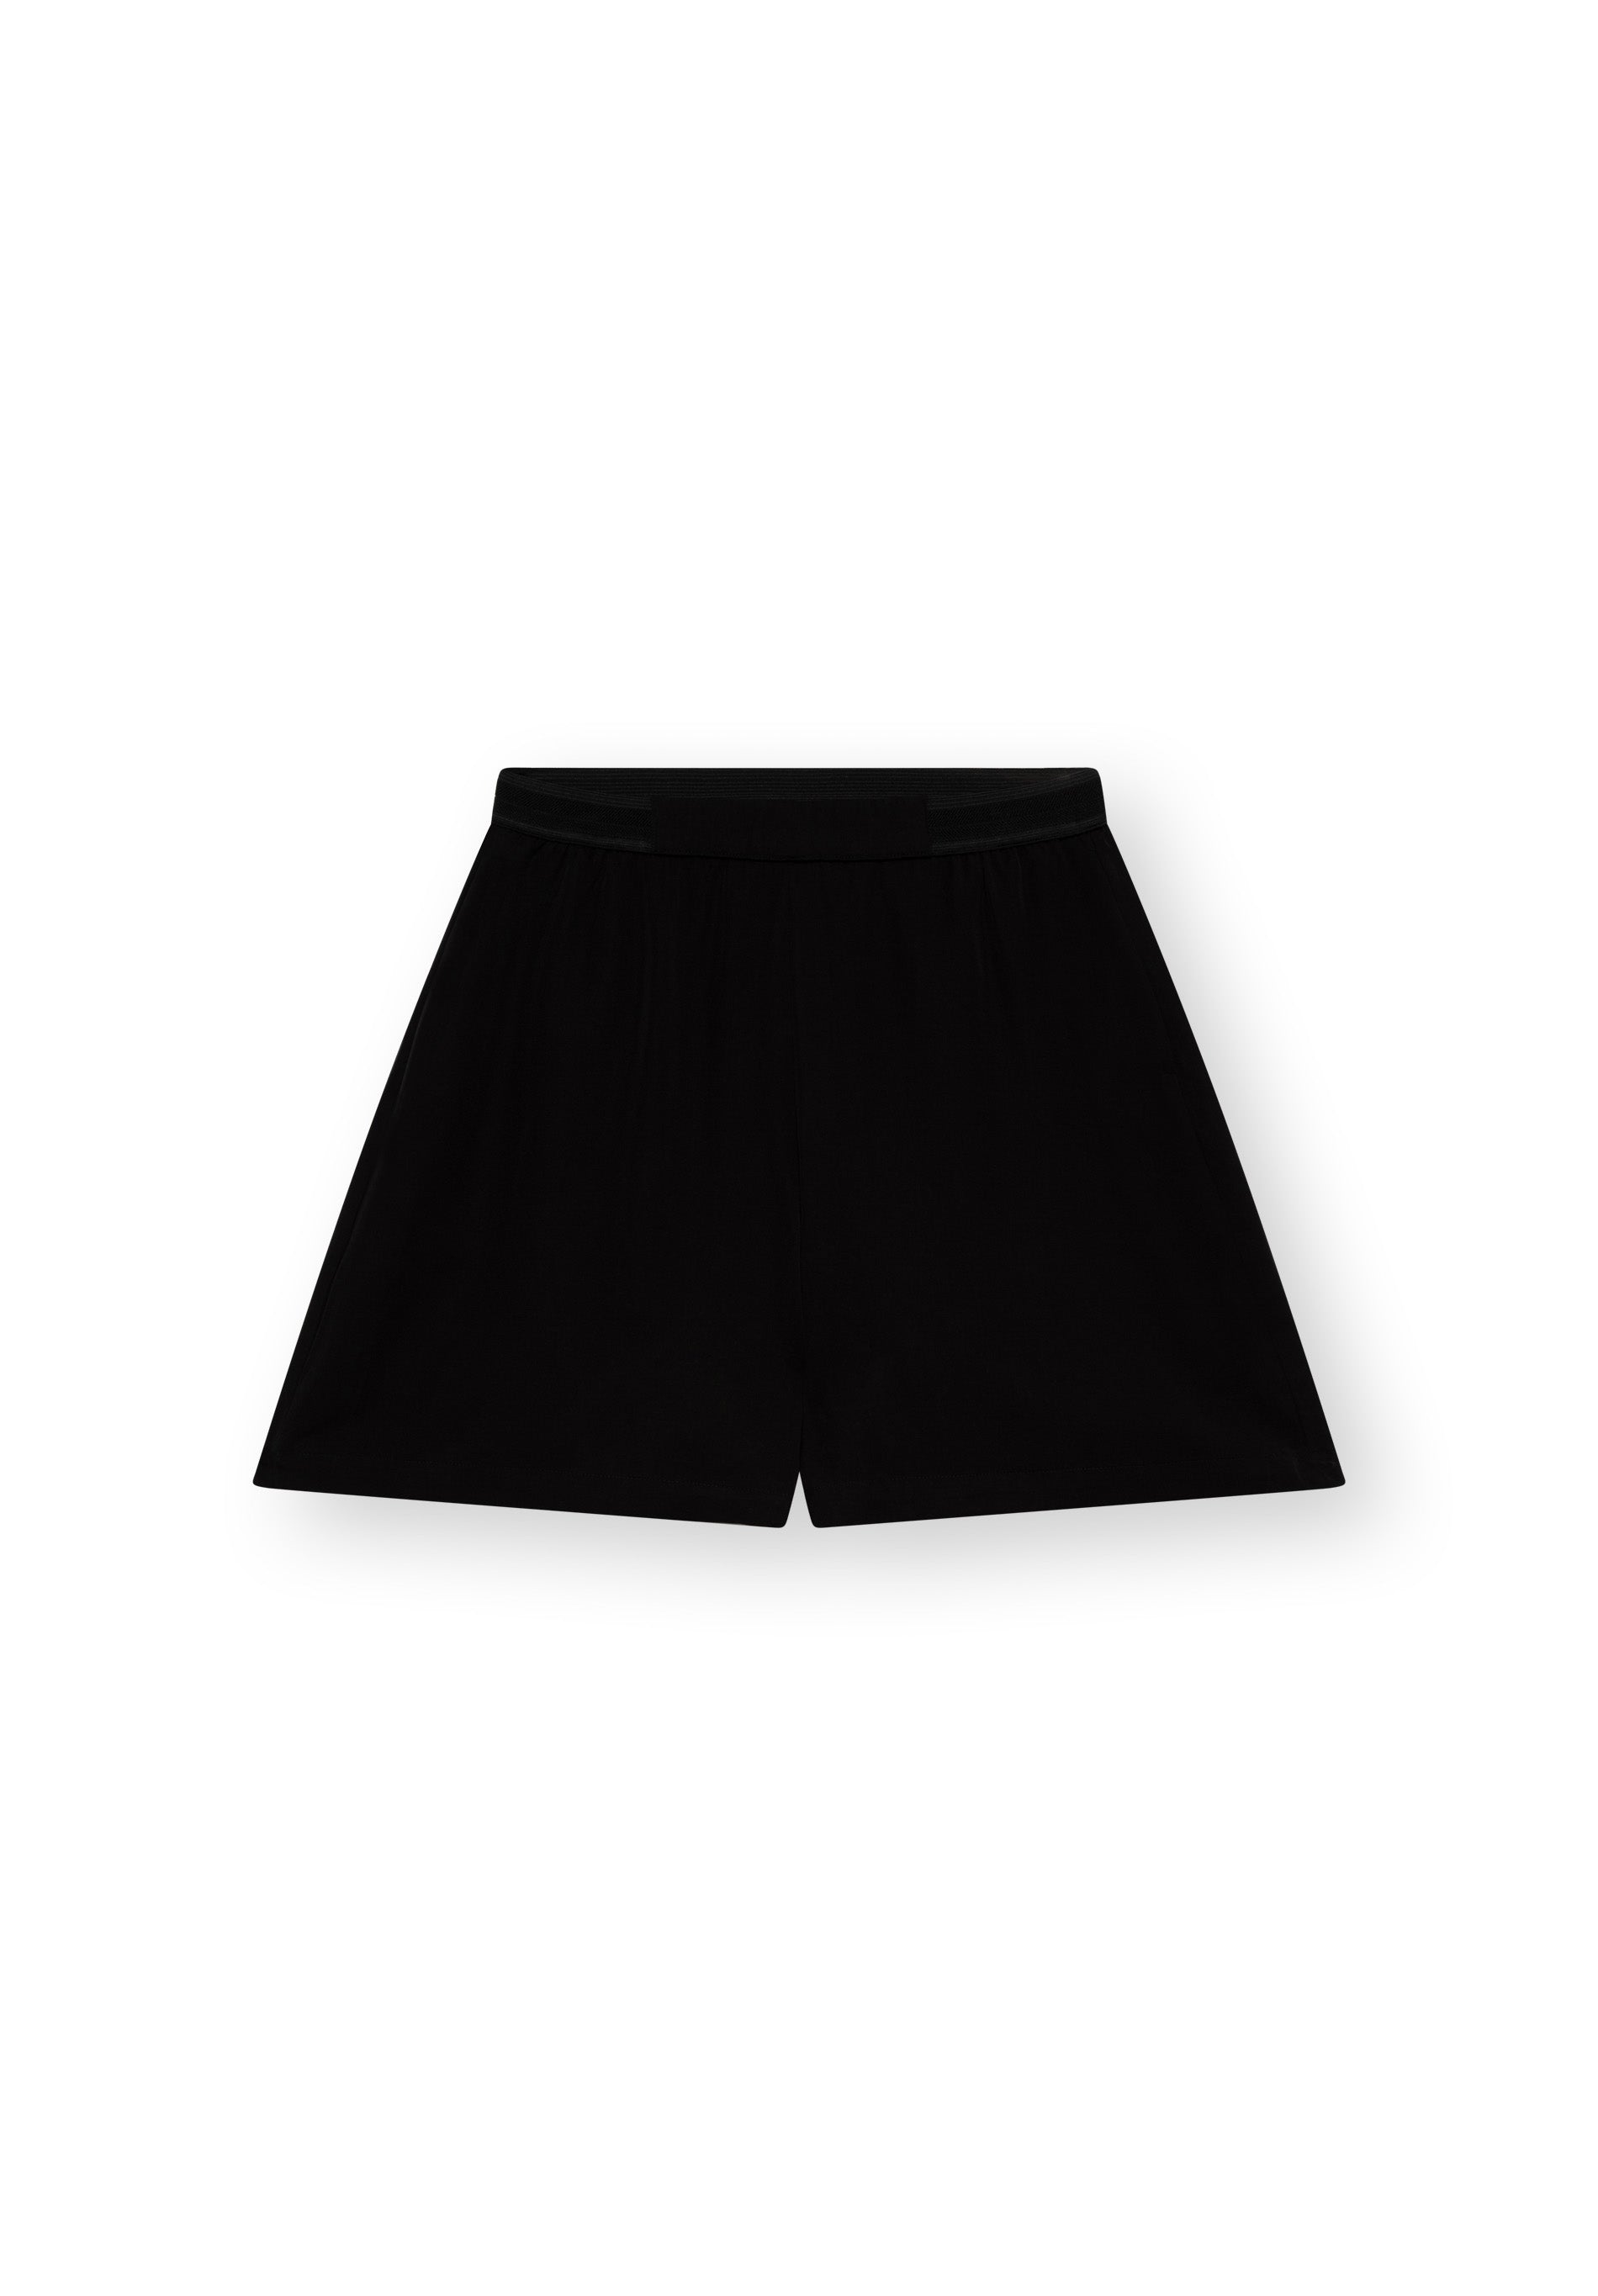 Shorts FELIPPA in schwarz von LOVJOI aus TENCEL™